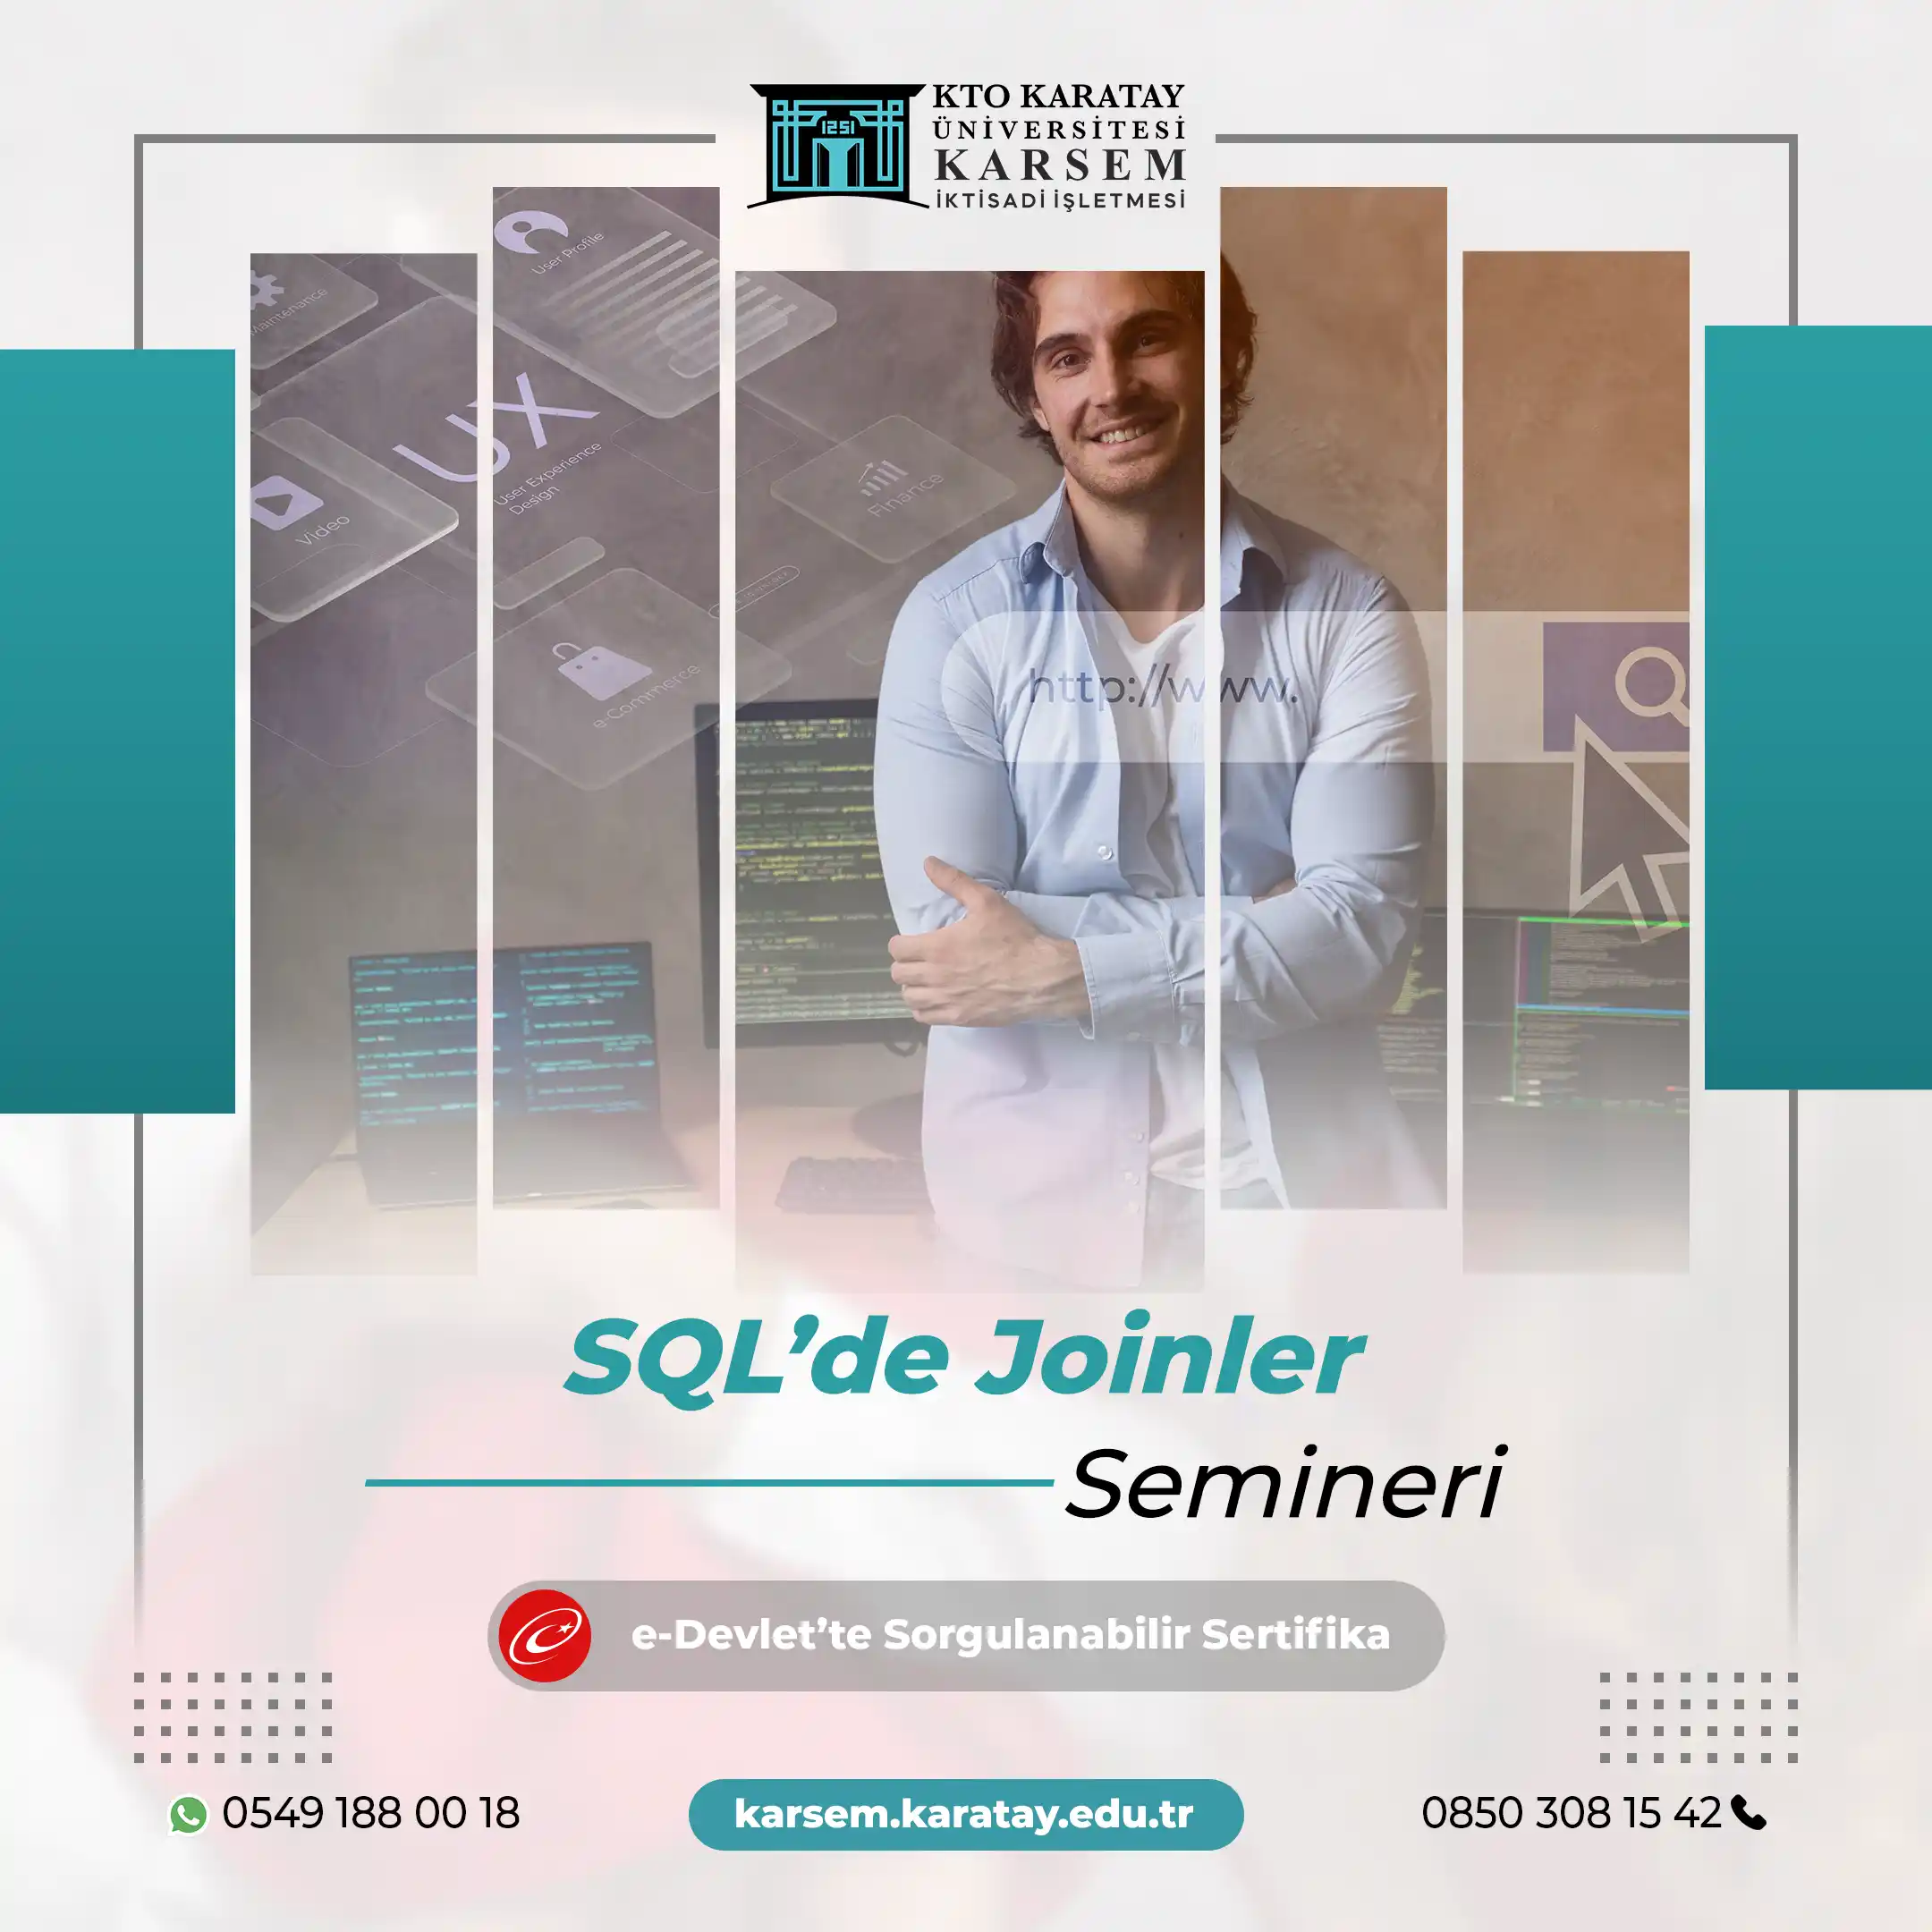 SQL’de Joinler Semineri